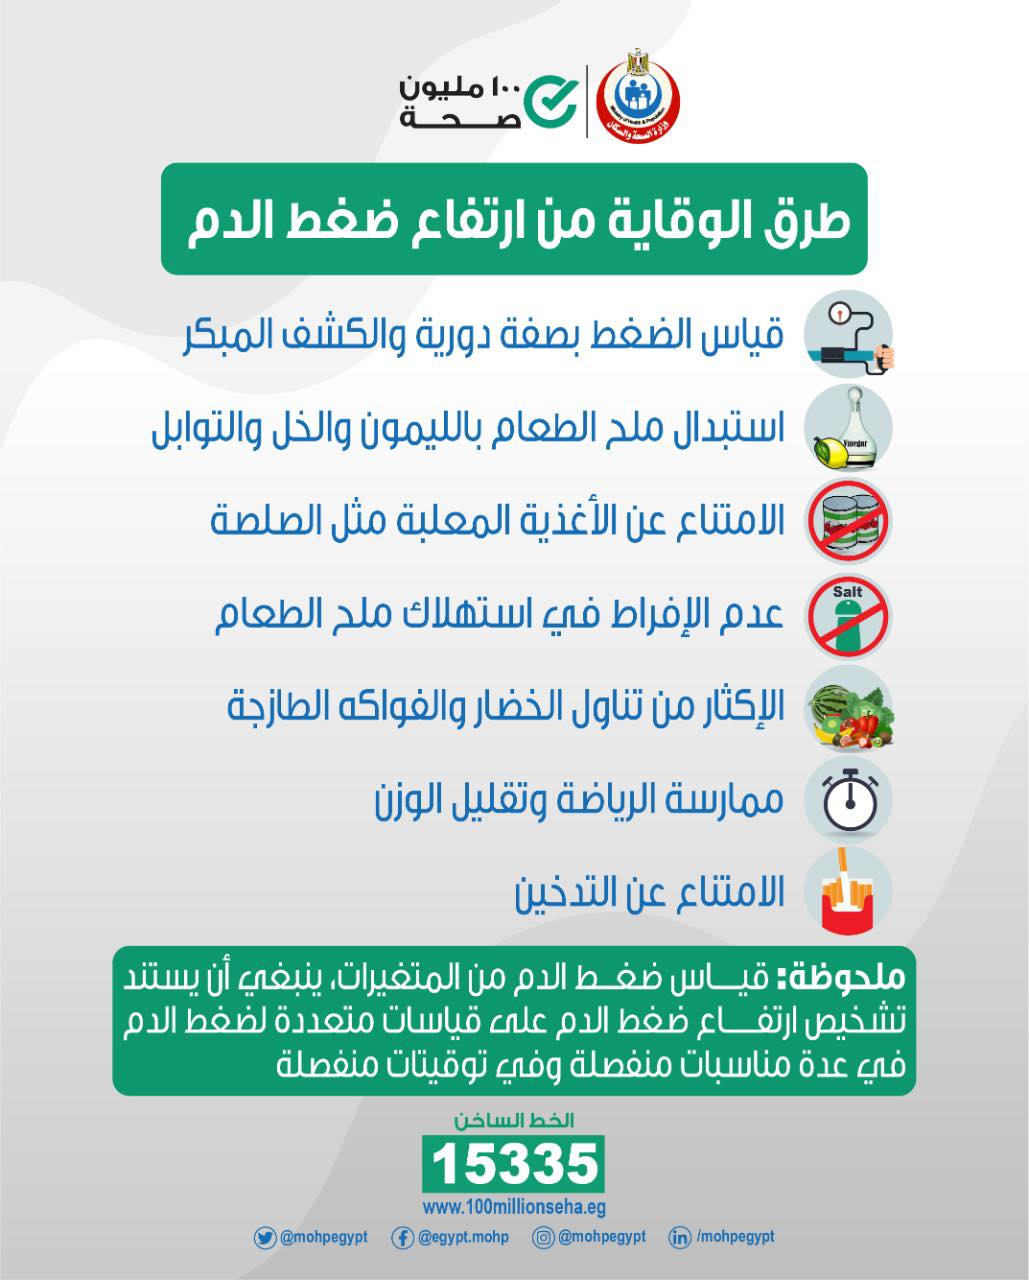 وزارة الصحة تنصح المواطنين بـ 7 إجراءات للوقاية من ارتفاع ضغط الدم 9